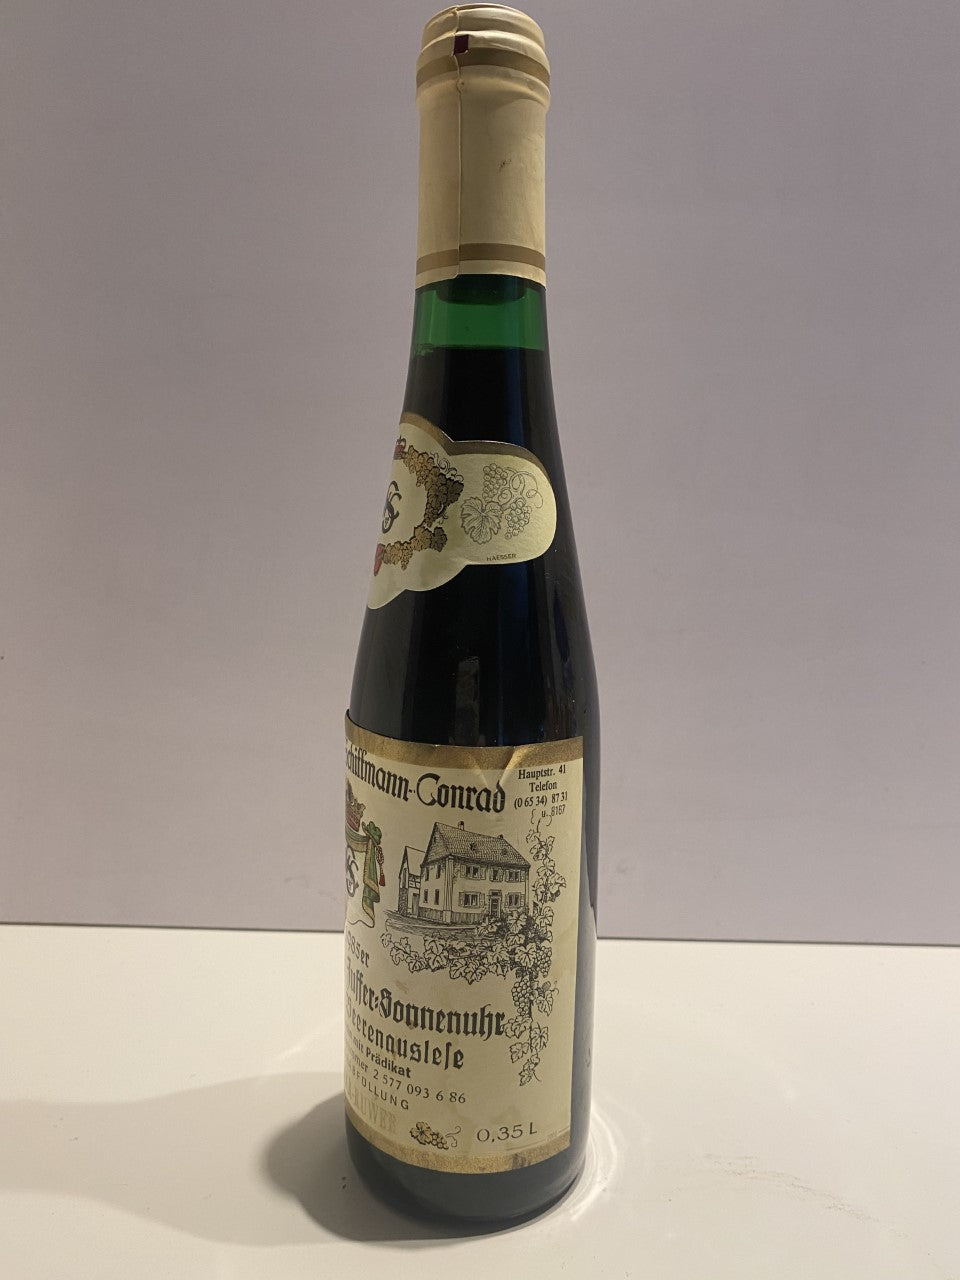 Sehr exklusiv - Weingut W. Schiffermann-Conrad Riesling Beerenauslese 1985, 350ml